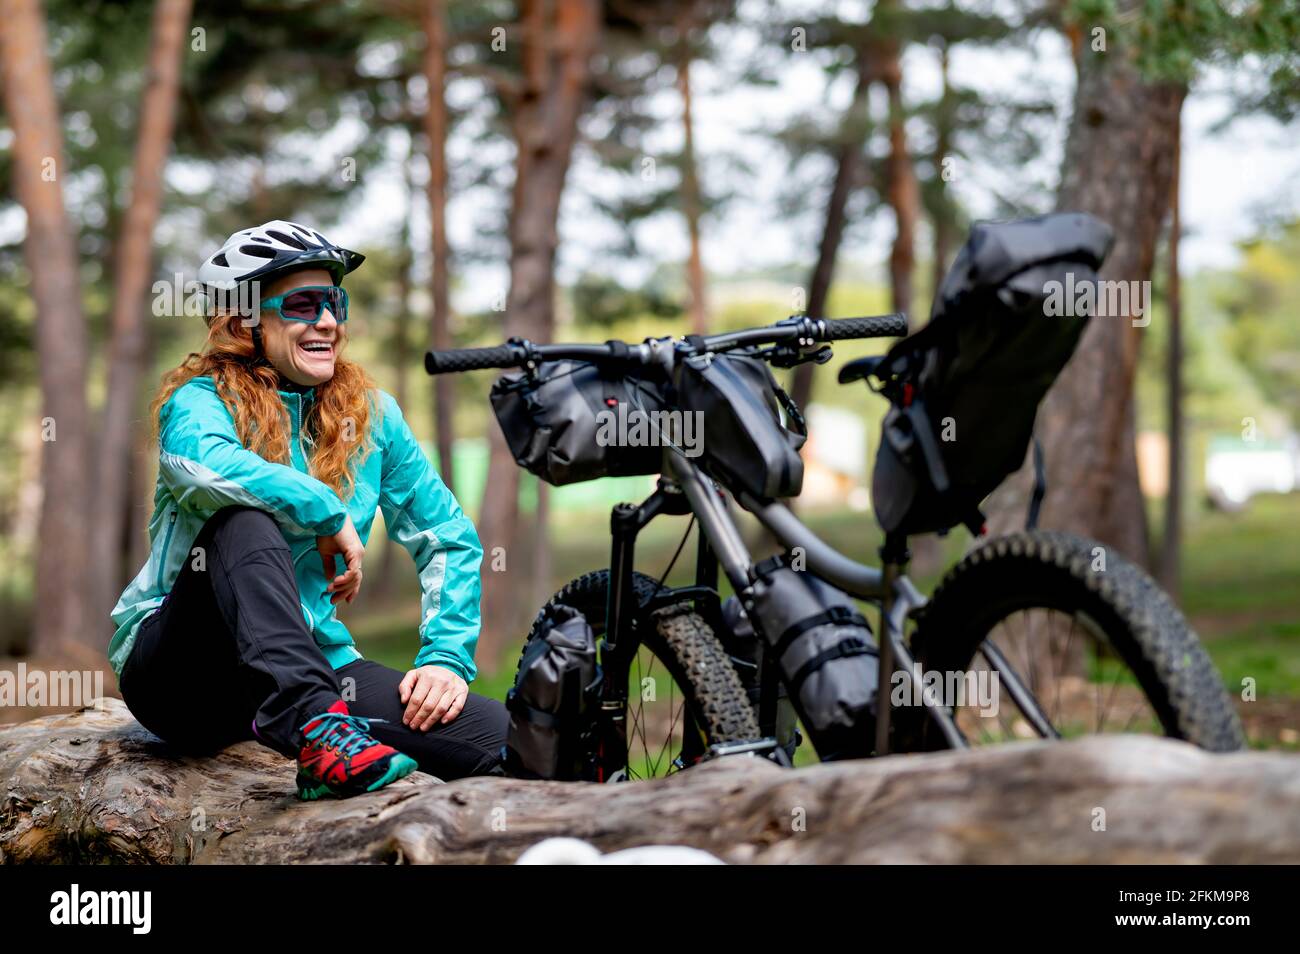 Eine Frau neben ihrem abenteuerlich ausgerüsteten Fahrrad Stockfoto